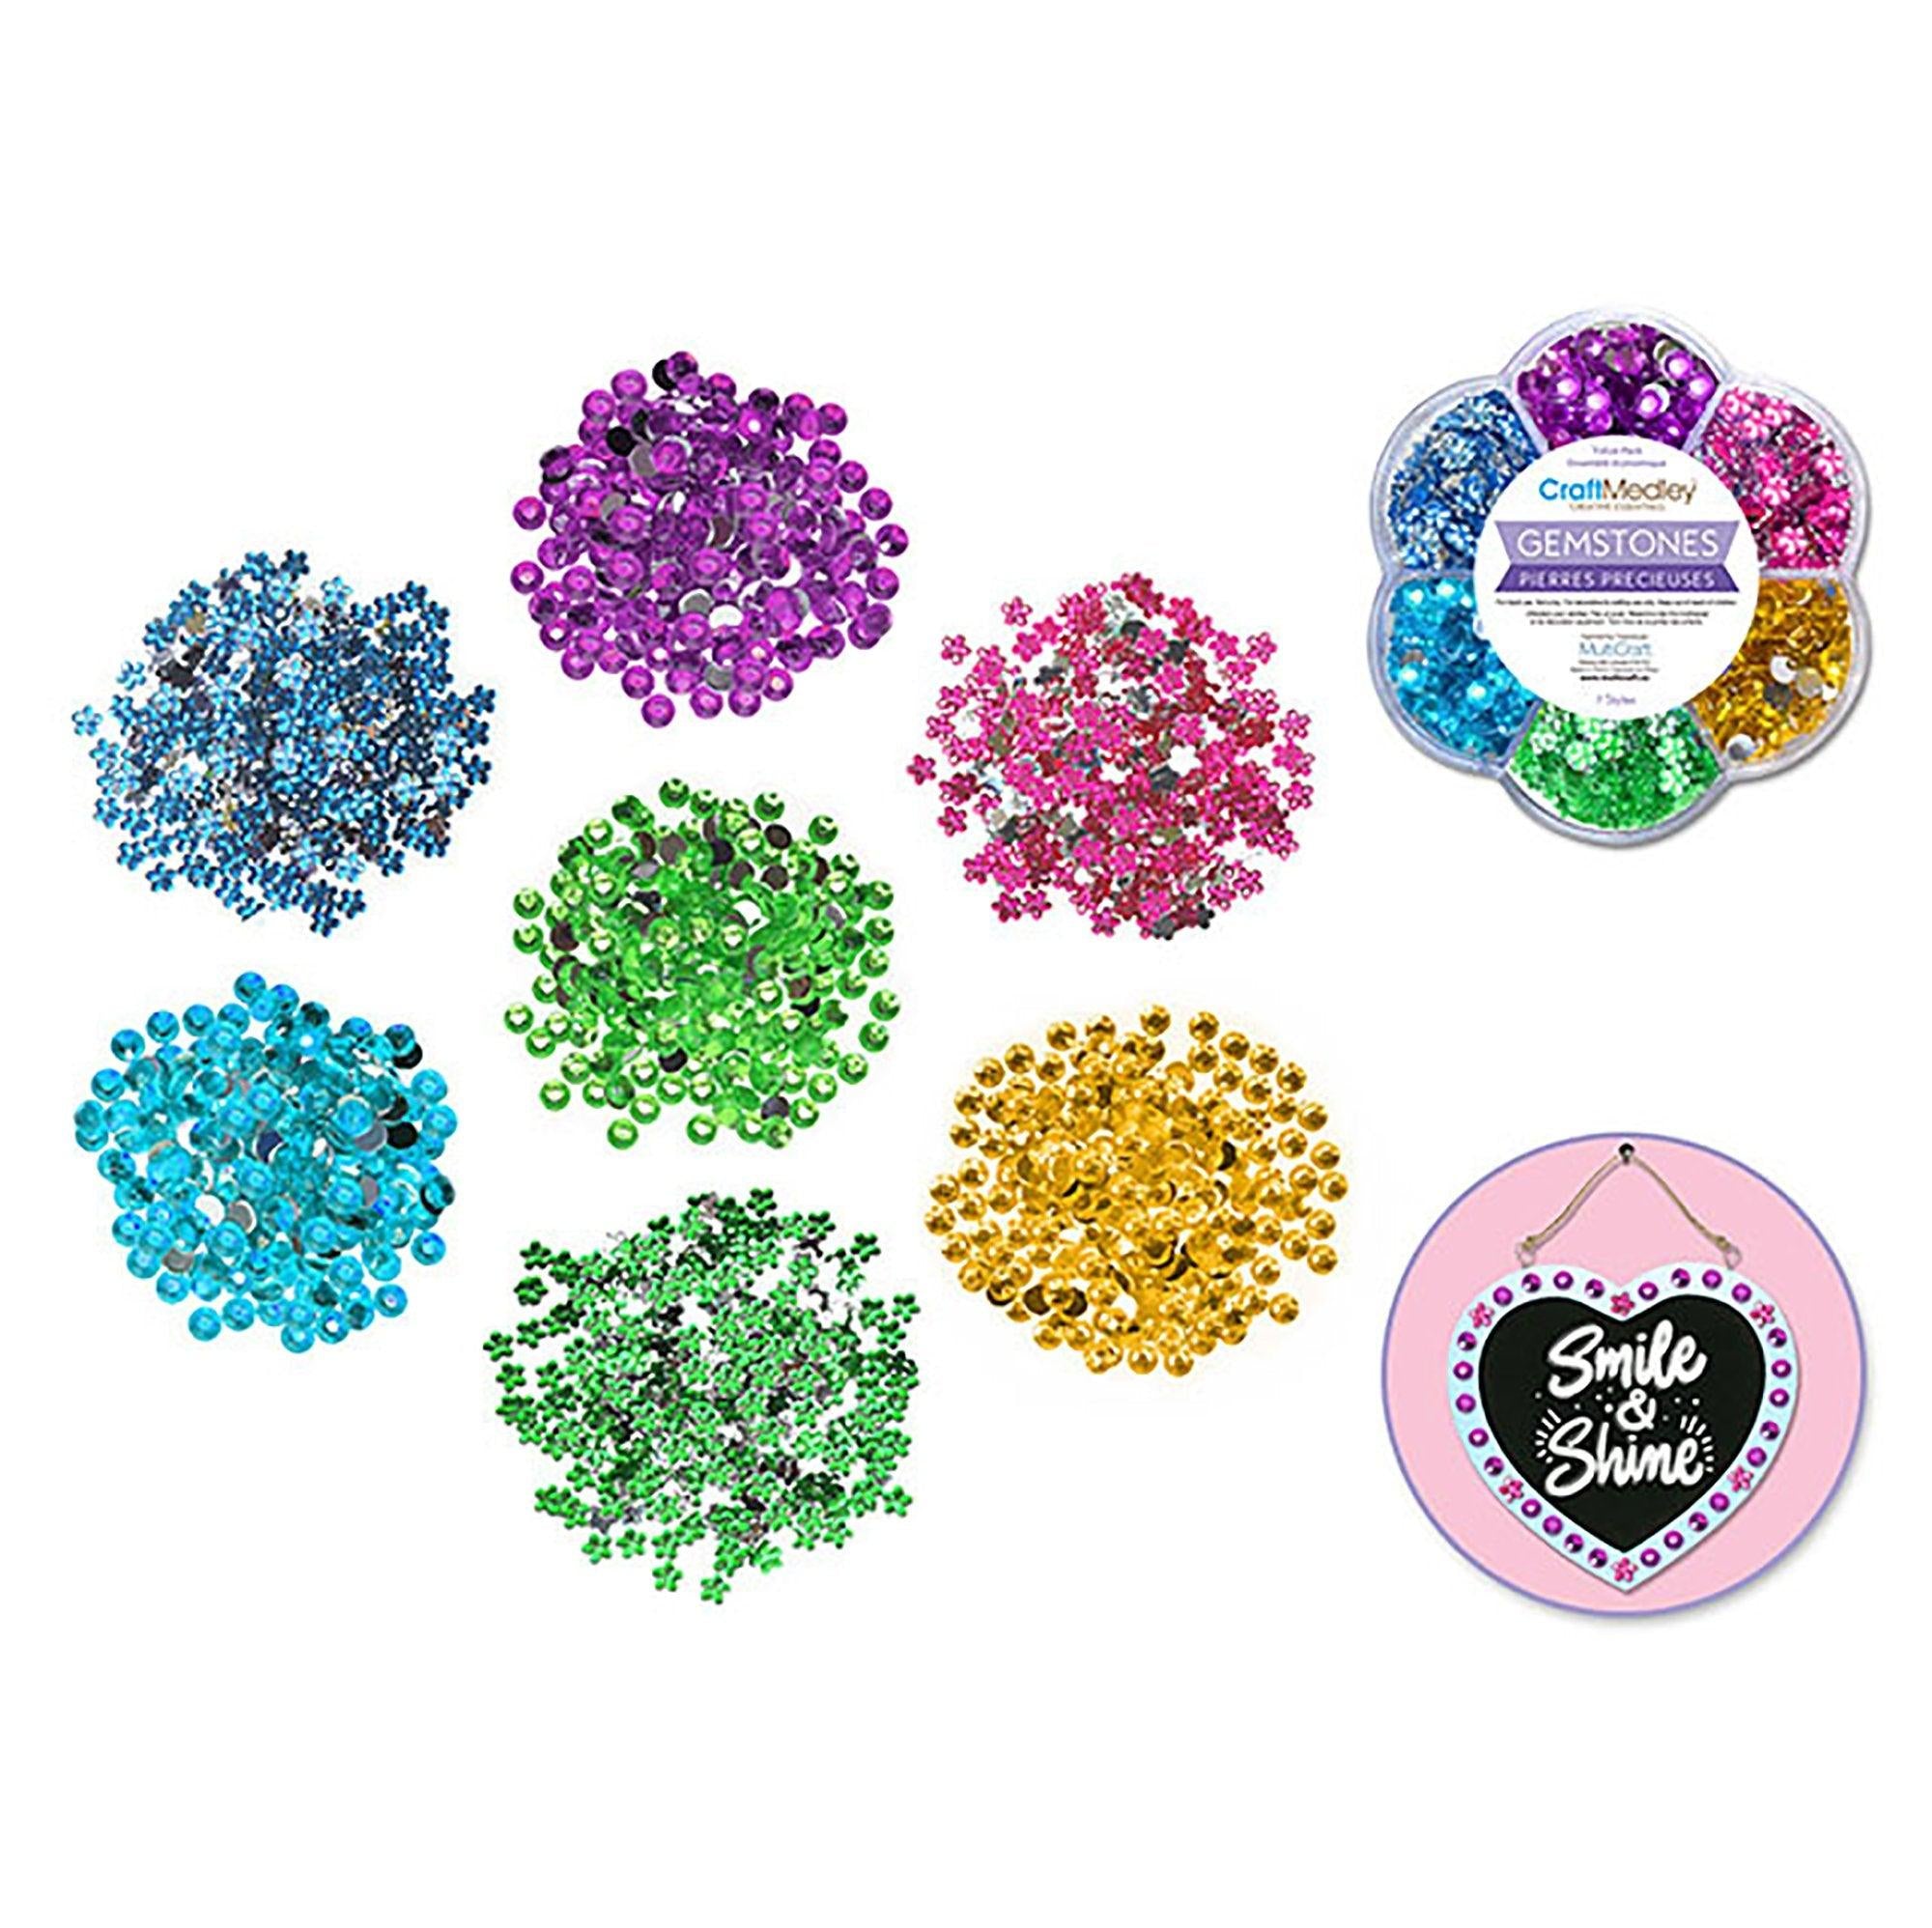 Craft Embell: 38.5g Gemstone Medley in Plastic Case 5mm Asst Shapes/Col B) Pastel - Dollar Max Depot